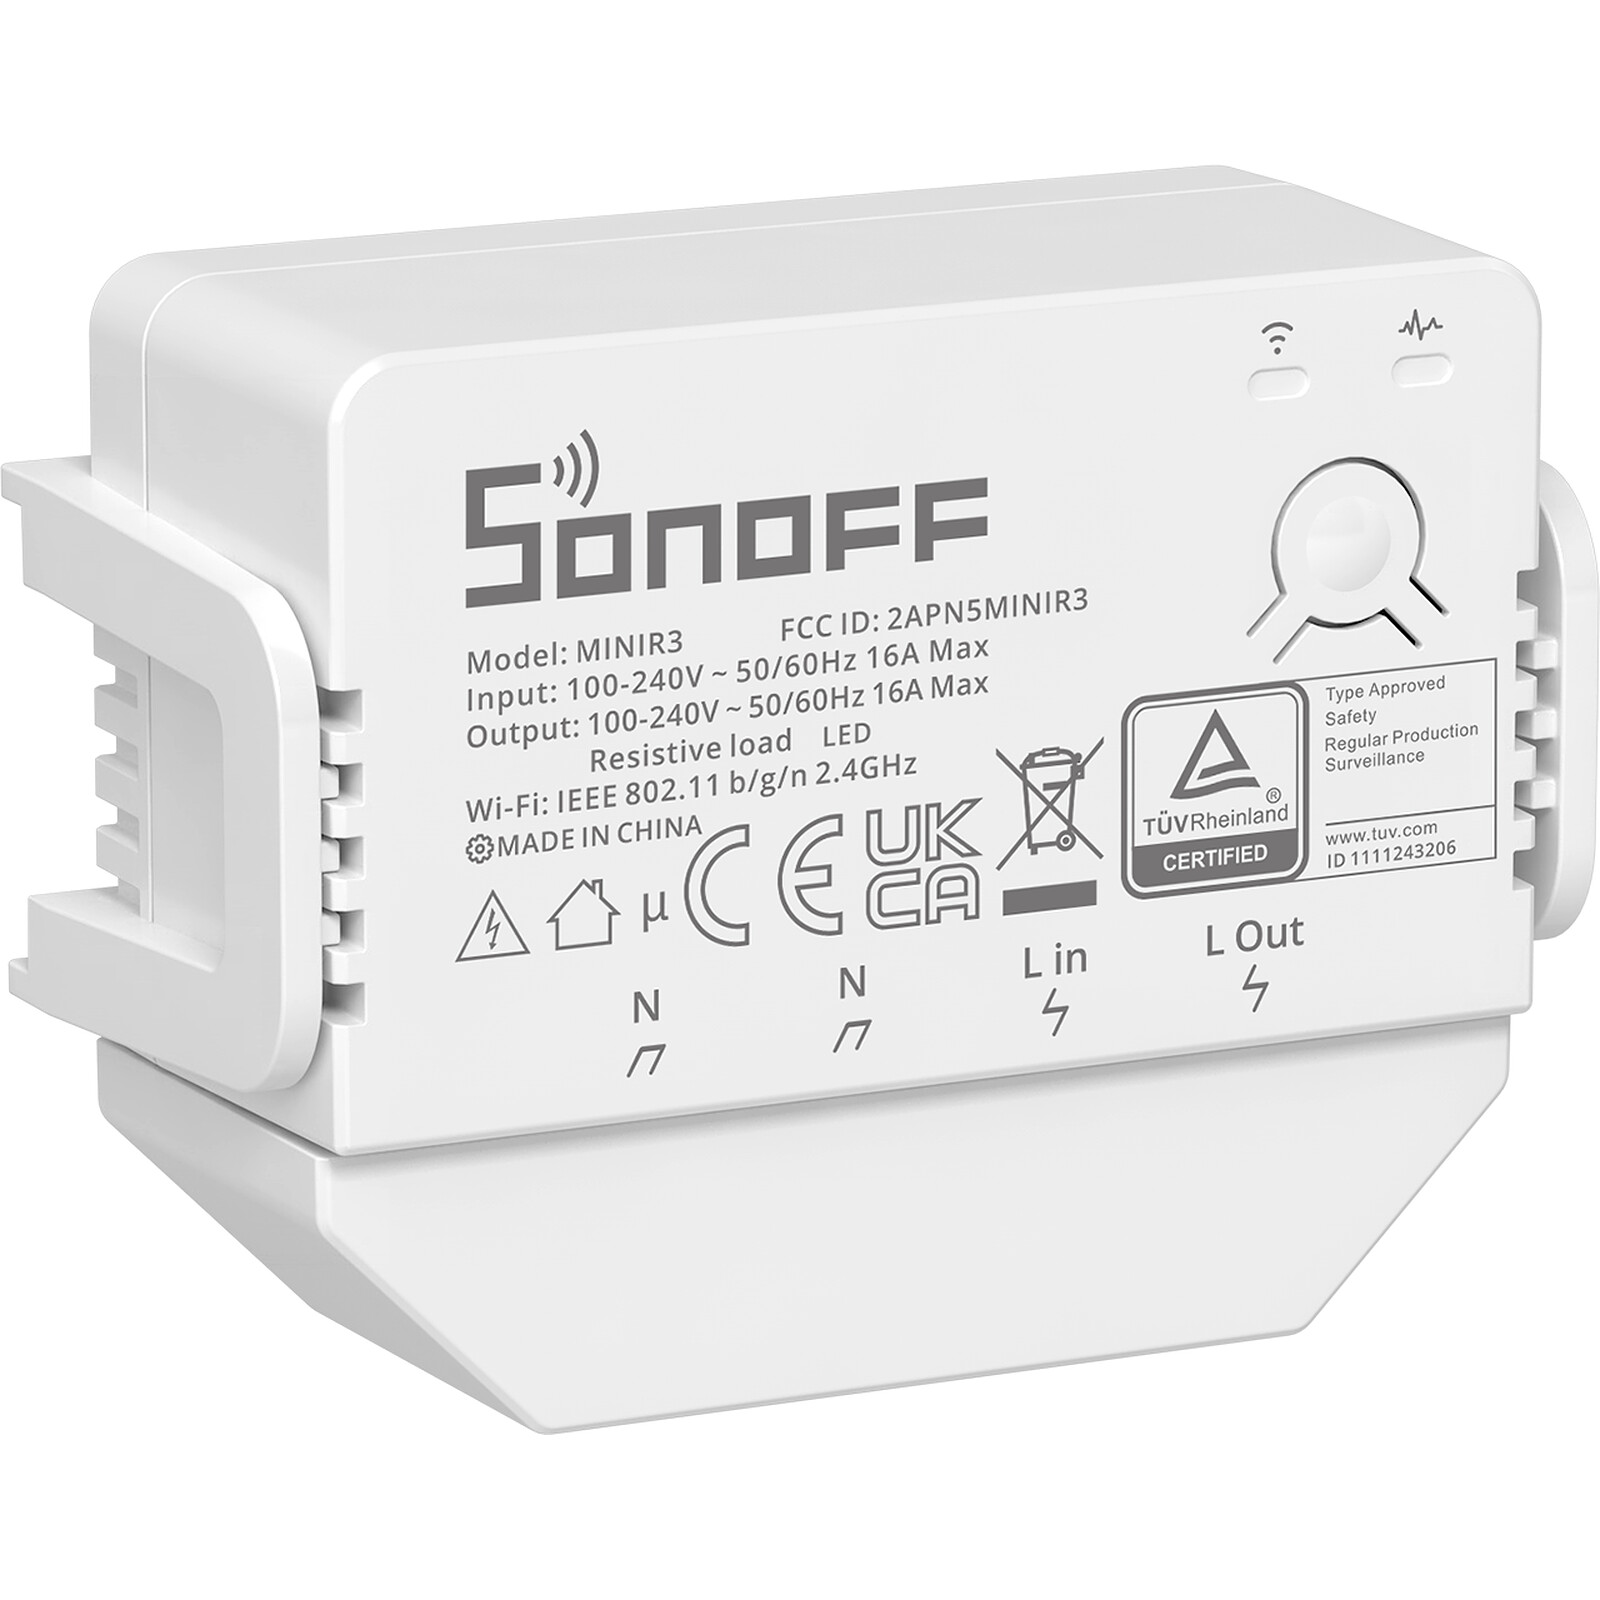 Sonoff - Ruban LED connecté Wifi - Lampe connectée - LDLC